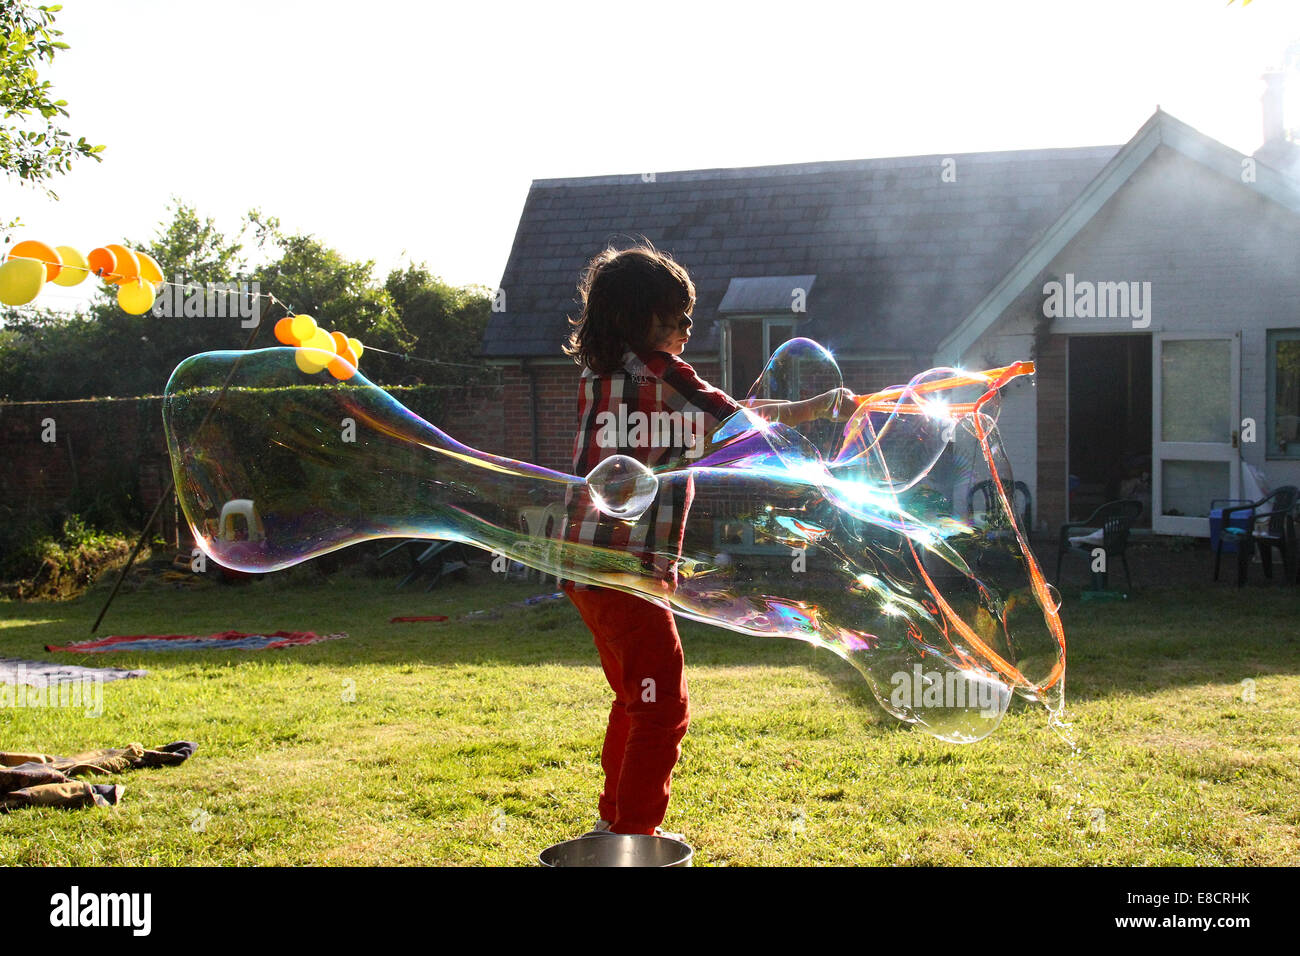 Ein kleines Kind, dass Luftblasen in einem Garten an einem Sommertag während einer Gartenparty. Stockfoto